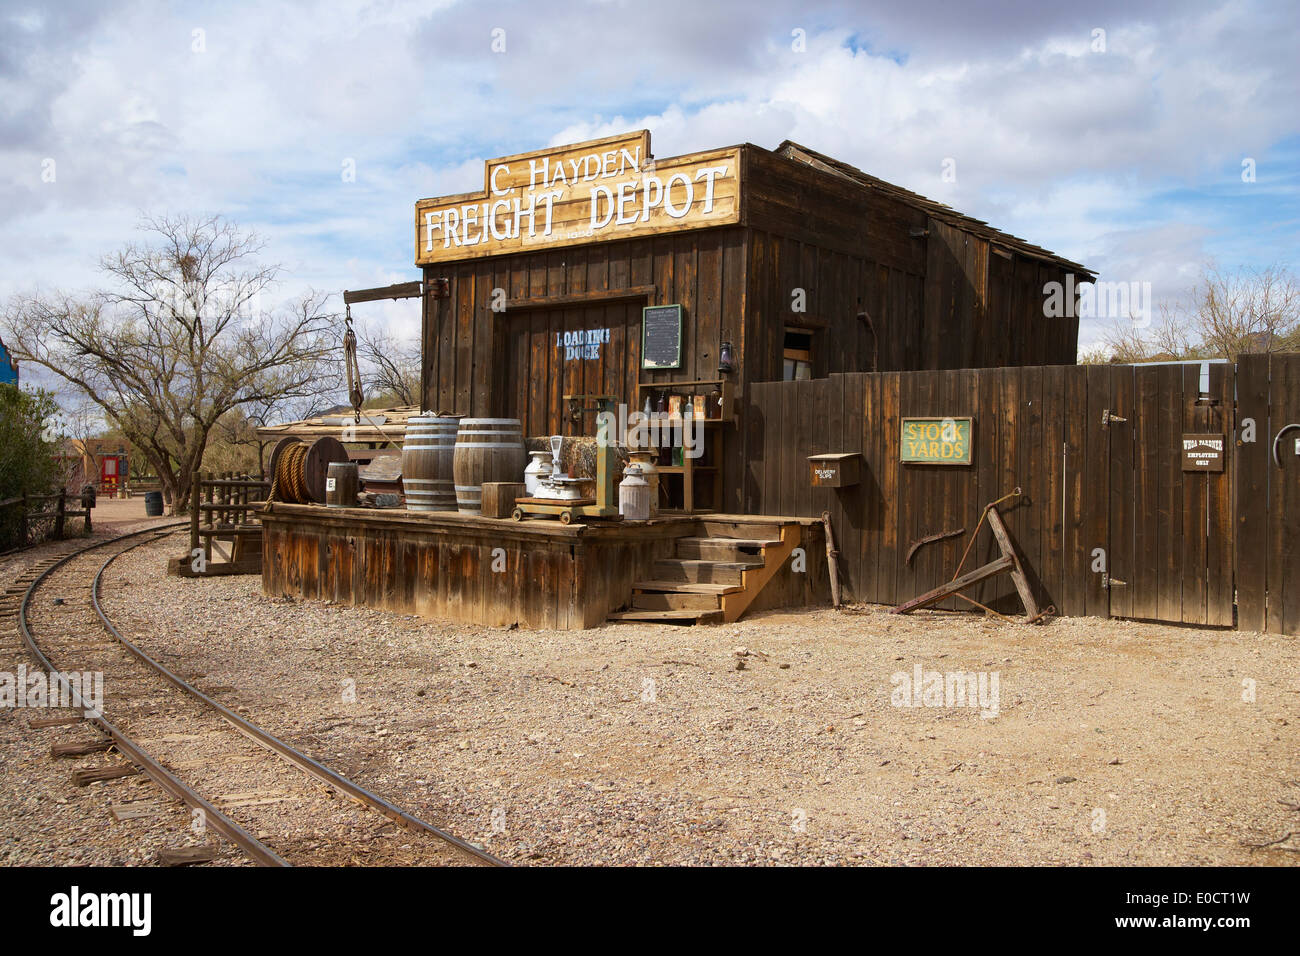 Cabane dans un film sonore étendue, Old Tucson Studios, désert de Sonora, en Arizona, USA, Amérique Latine Banque D'Images